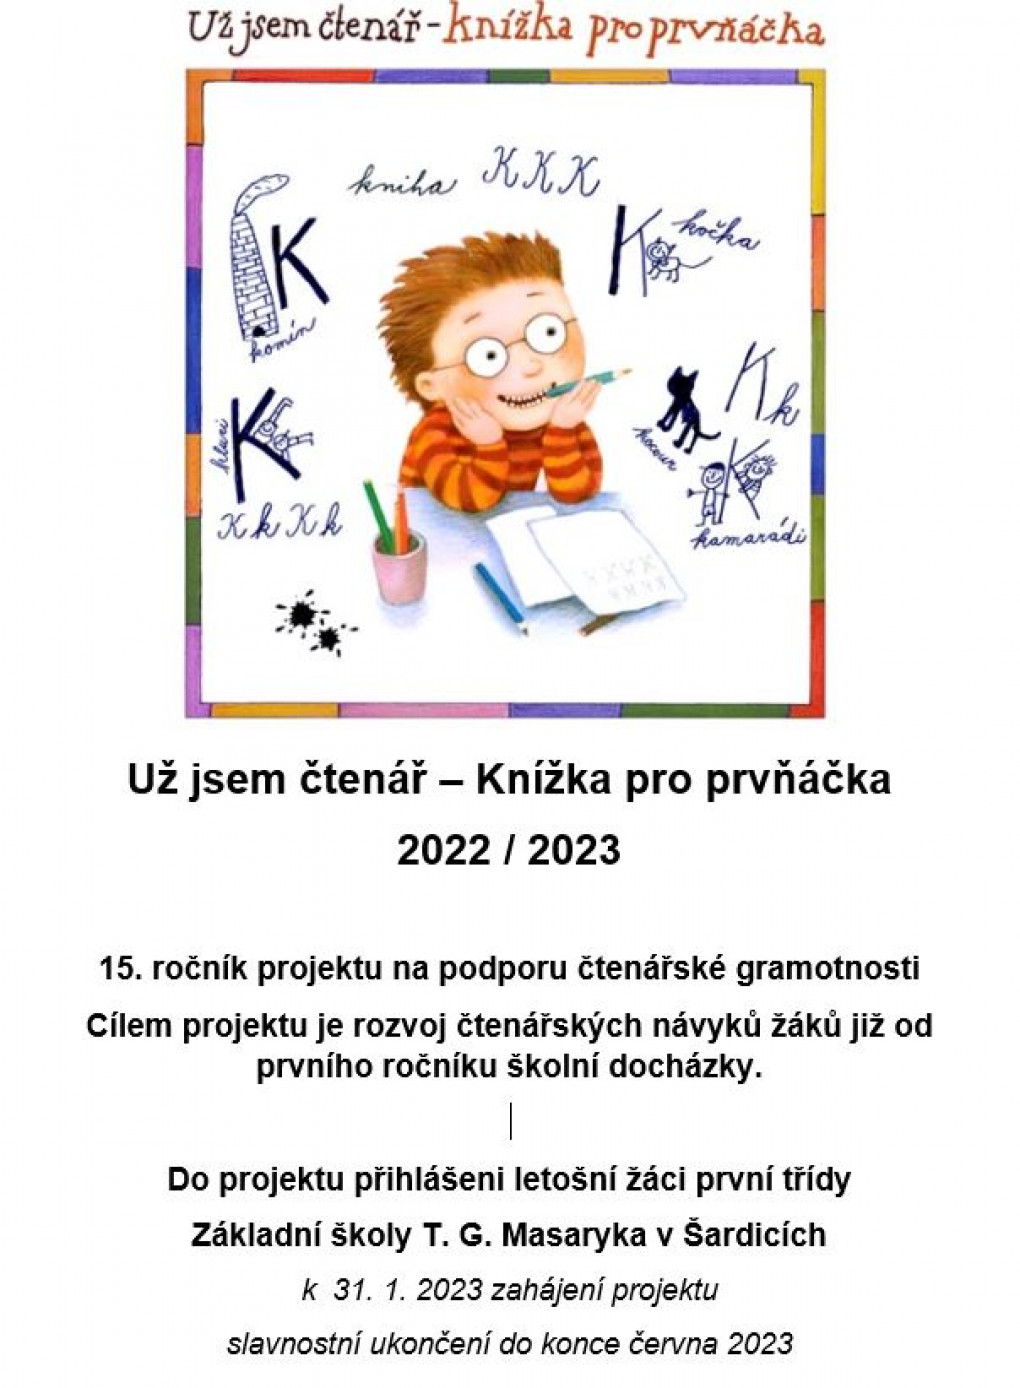 knizka_pro_prvnacka_2022_2023.jpg